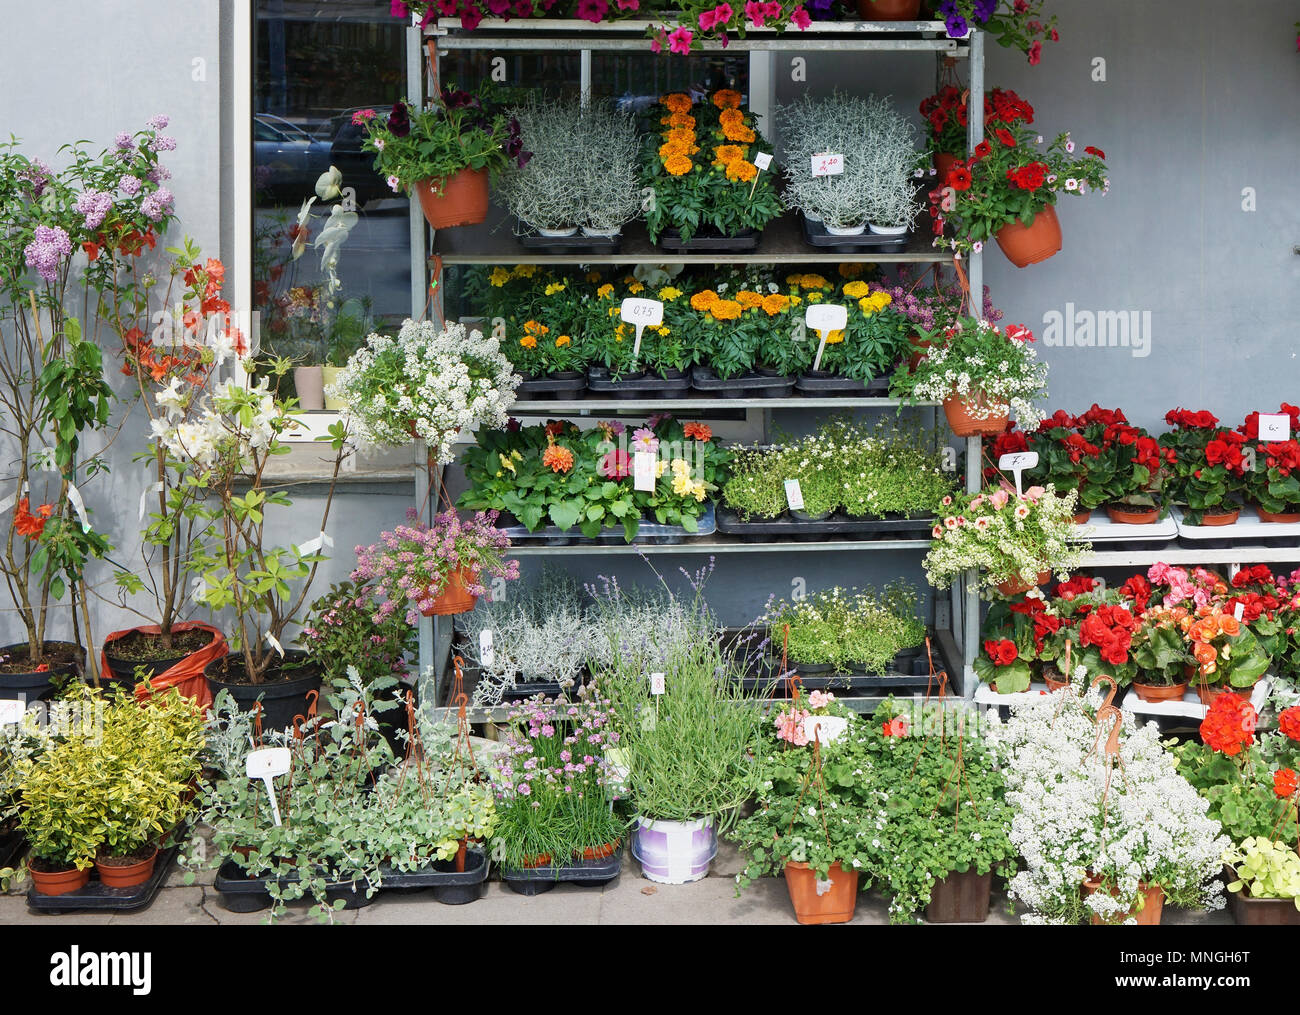 Un petit magasin rue marché vend des produits frais dans des pots de fleurs de printemps en direct. Vue de face en plein air peut tourné en milieu urbain Banque D'Images